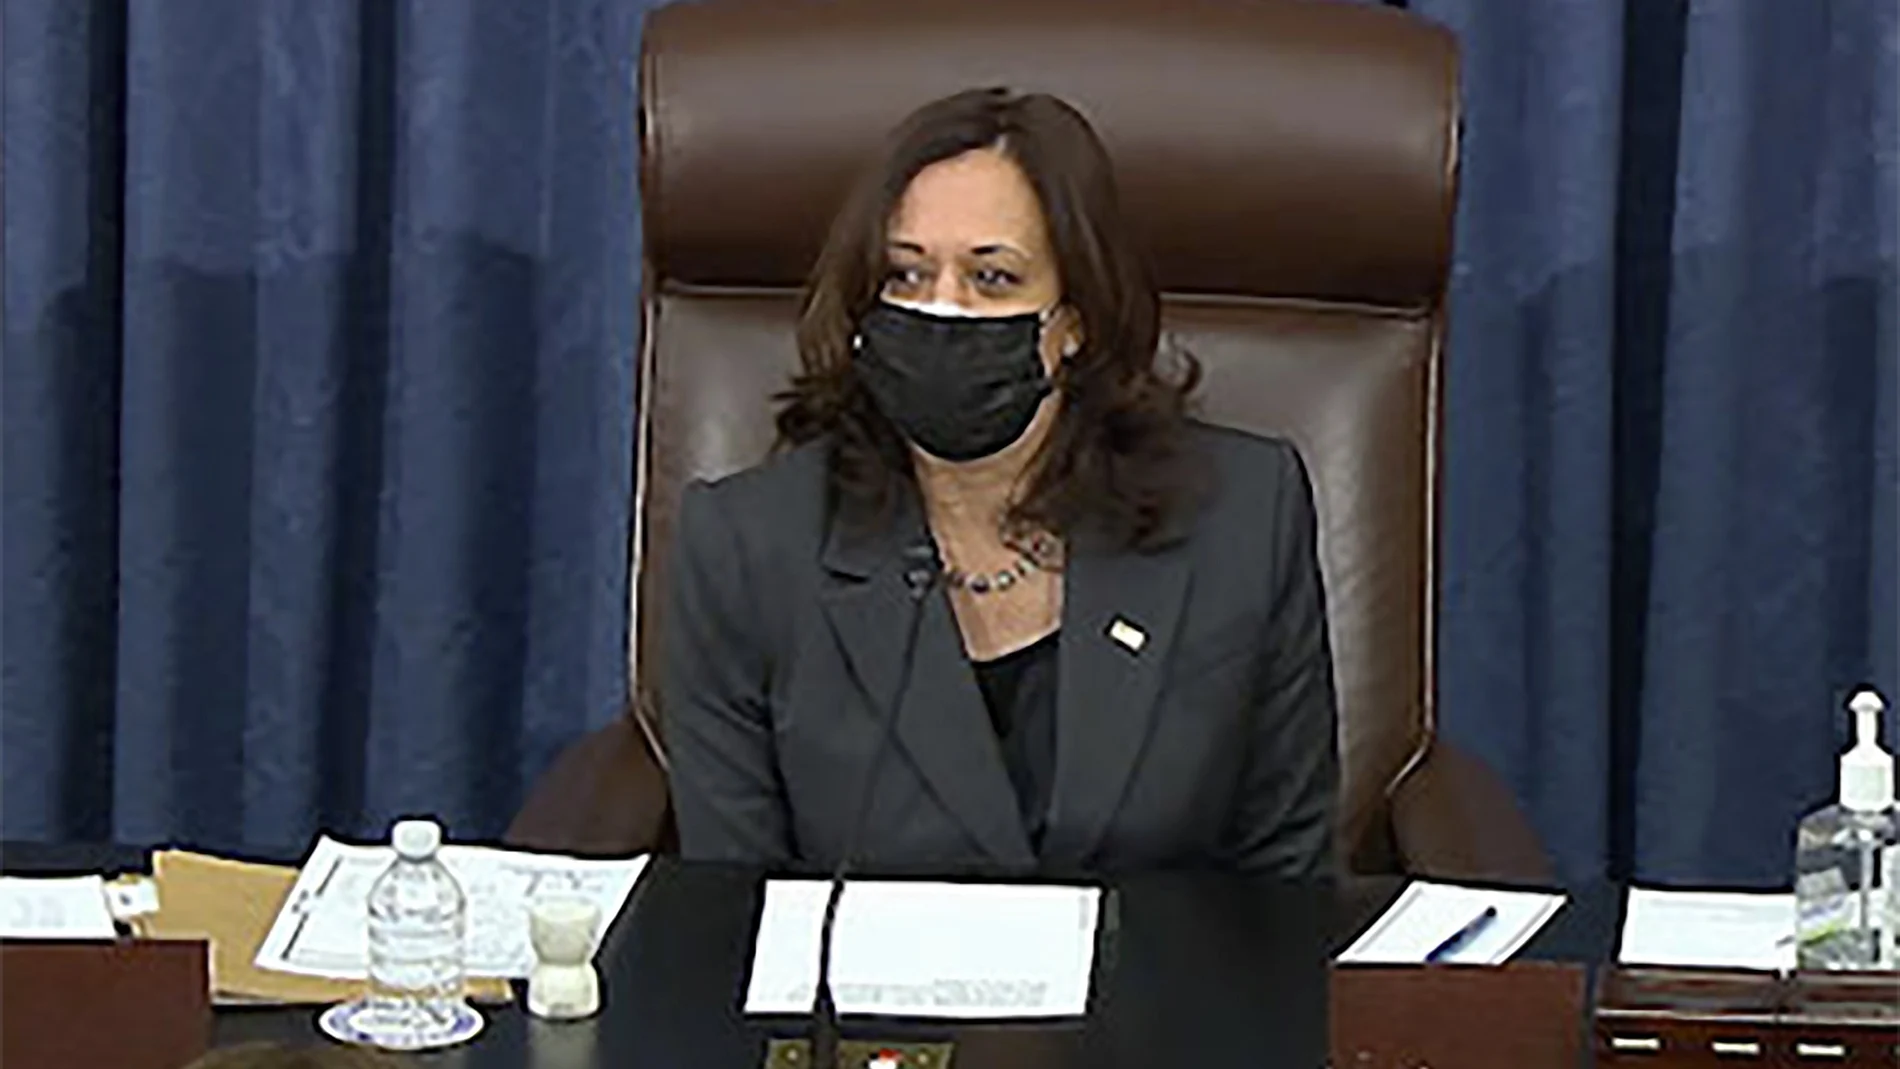 La vicepresidenta Kamala Harris se sienta en la silla en el pleno del Senado para emitir el voto de desempate